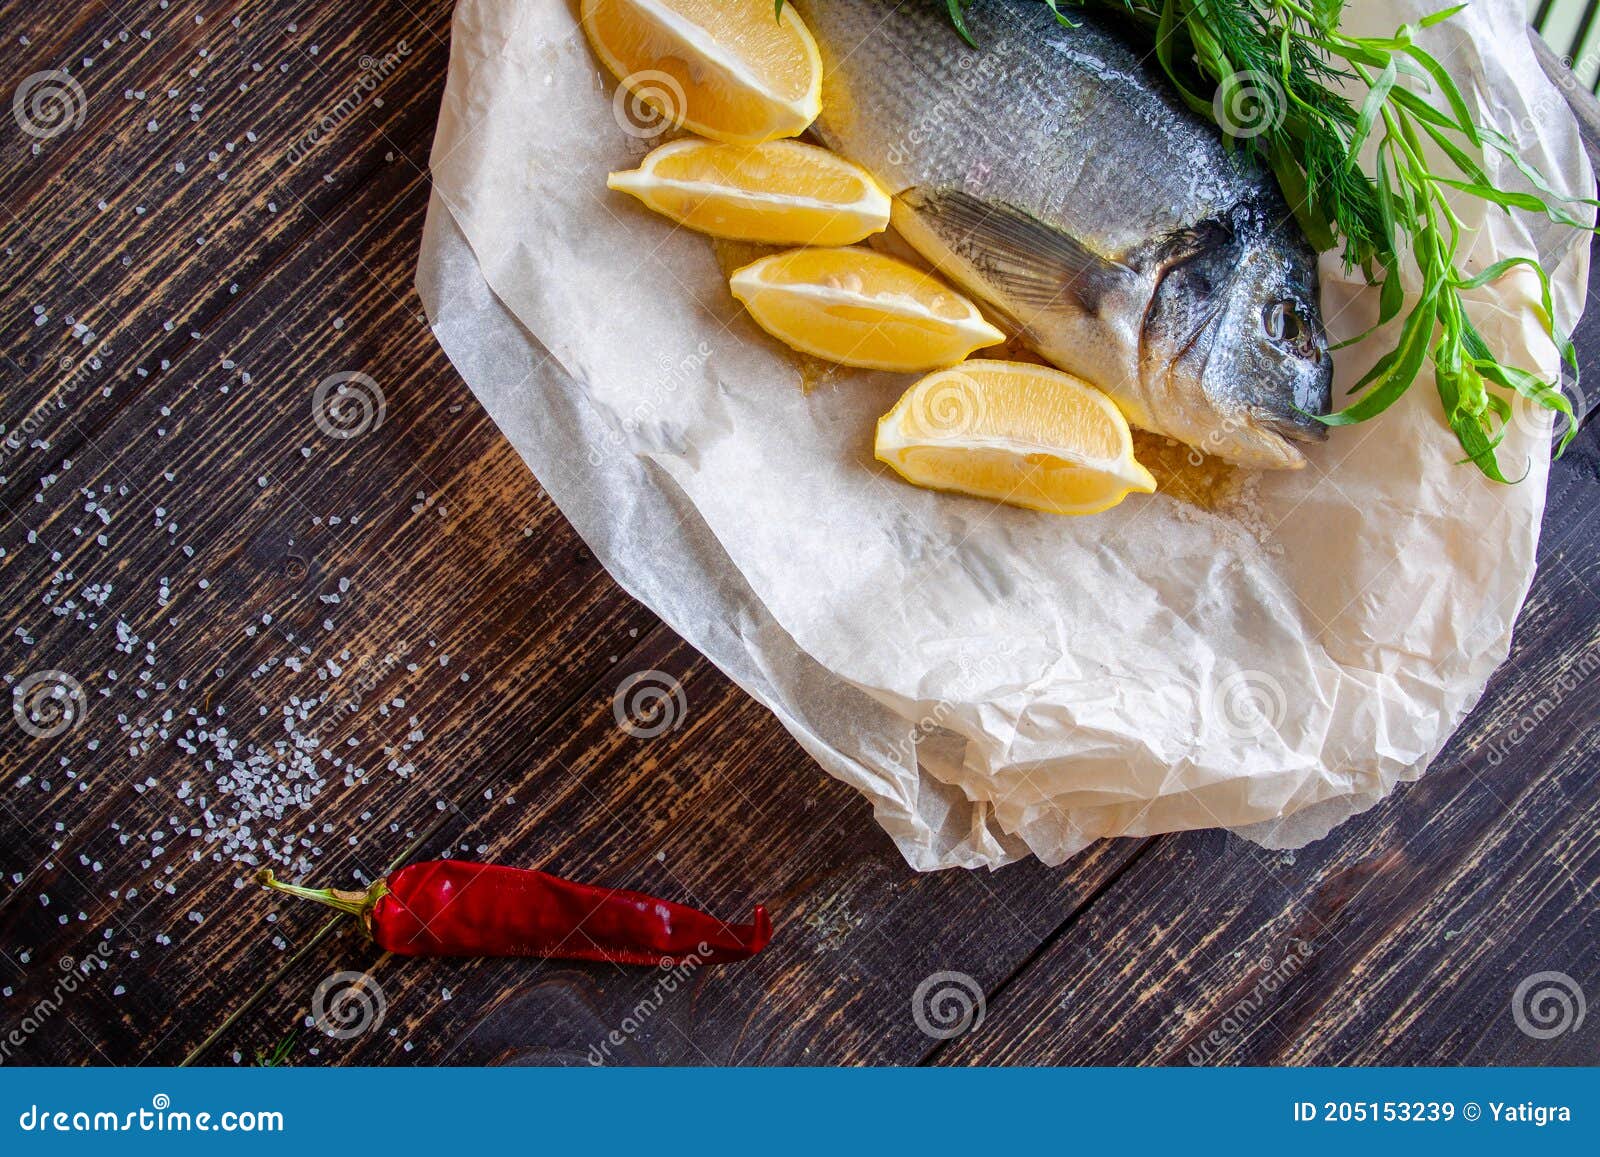 薄荷与鱼香草的图片,十香菜和薄荷图片对比,鱼香草和薄荷外形图_大山谷图库